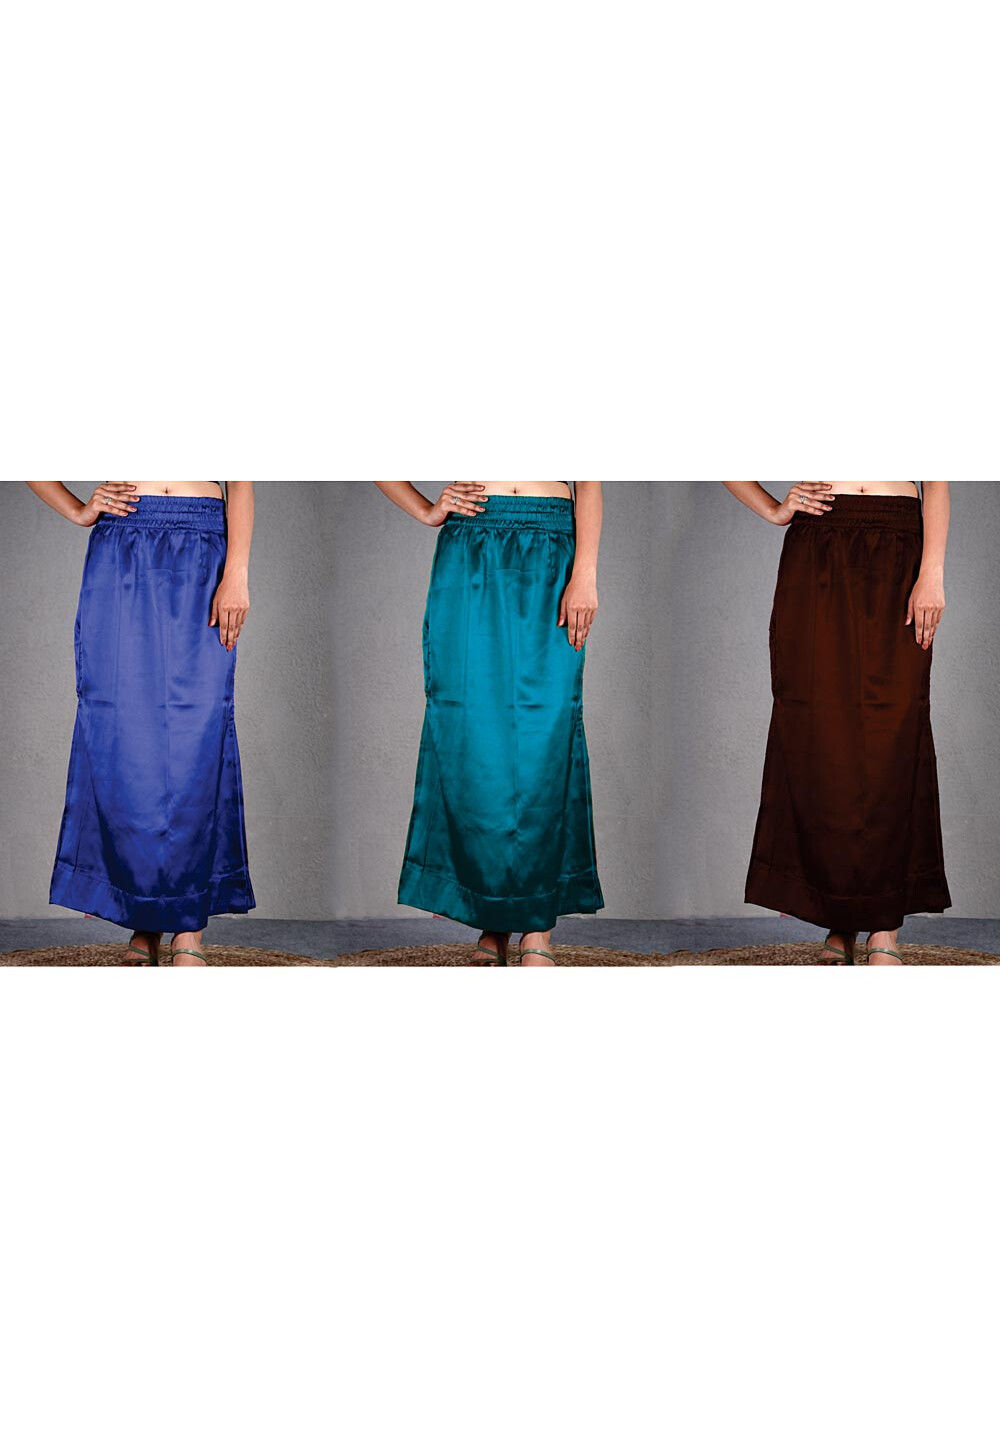 Solid Color Satin Petticoat Combo Set in Multicolor : UAC379